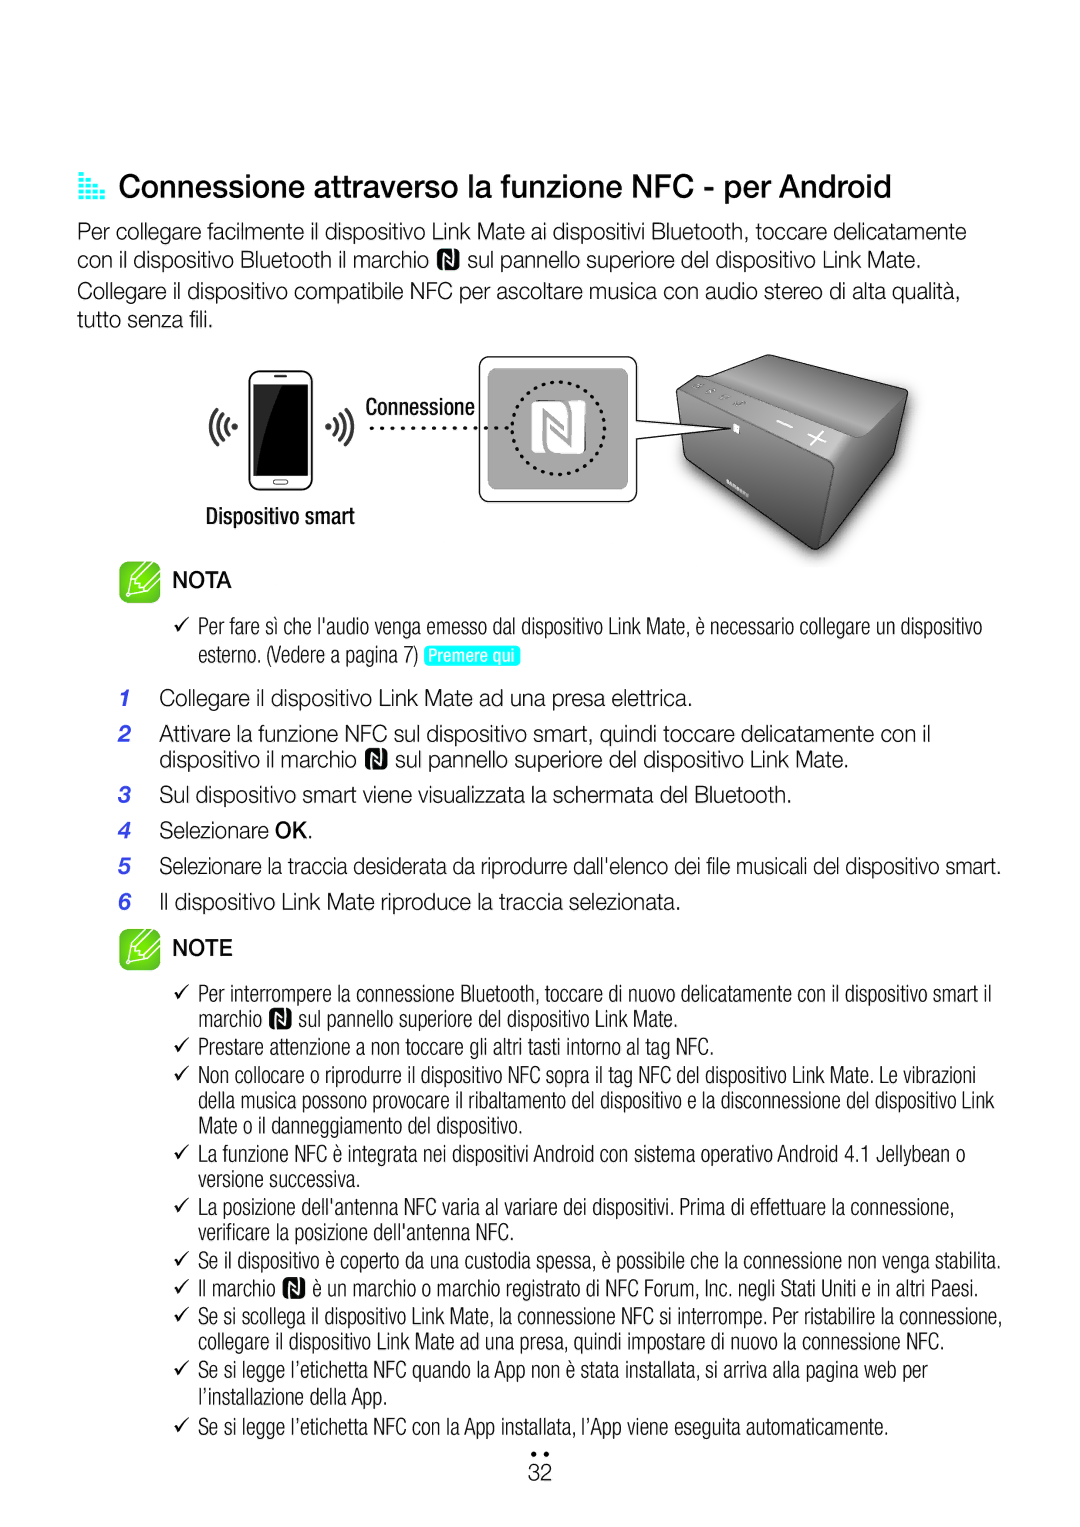 Samsung WAM270/ZF manual AA Connessione attraverso la funzione NFC per Android, Mate o il danneggiamento del dispositivo 